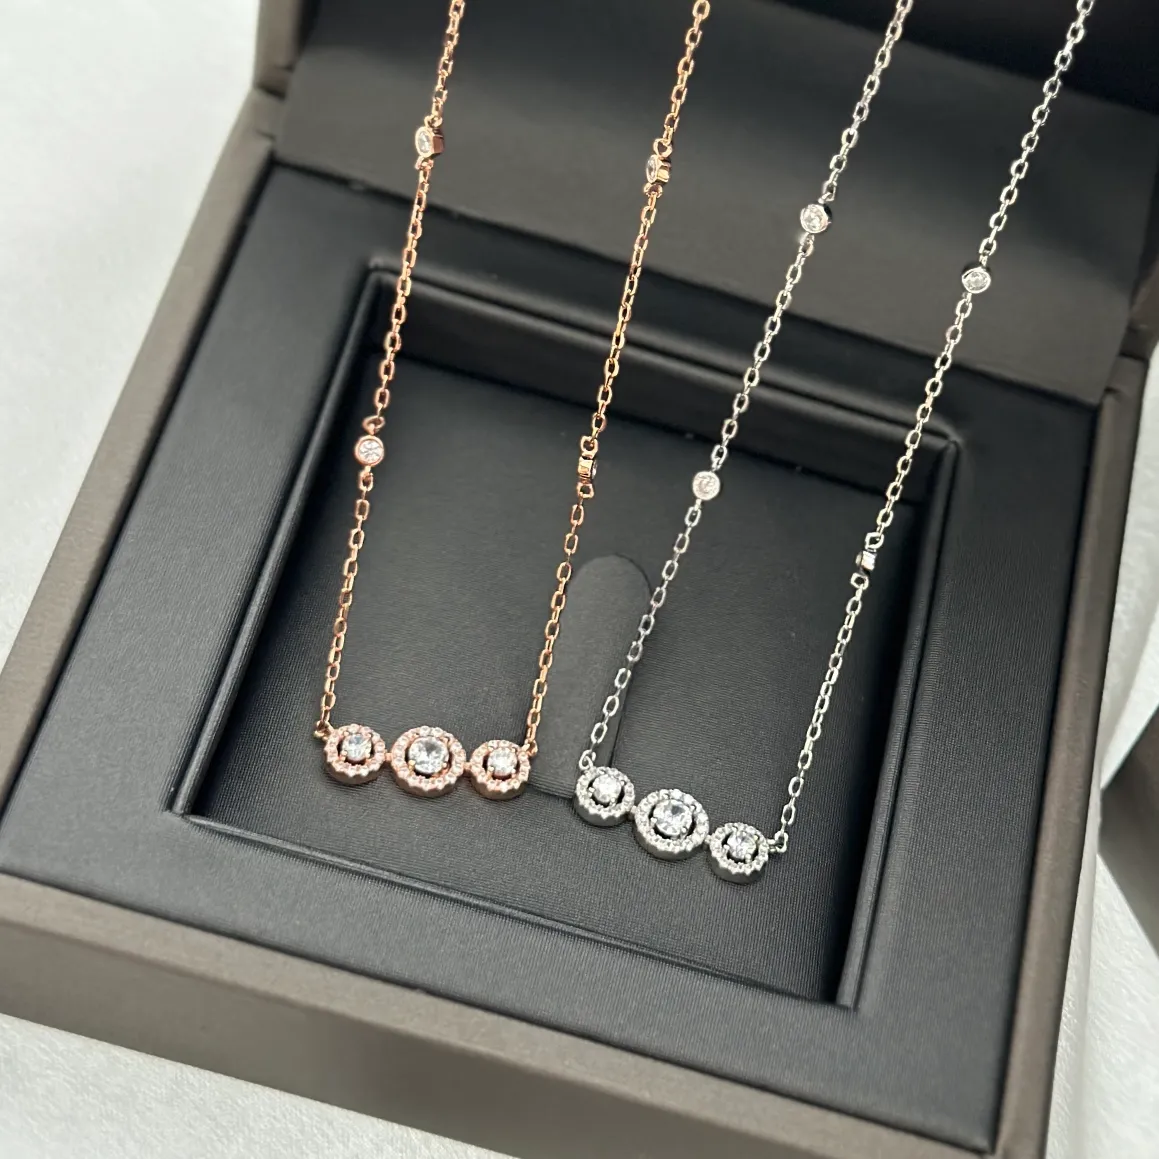 Messiika JOY TRILOGY ожерелье женский дизайнер ювелирных изделий с бриллиантами стерлингового сьера официальные репродукции позолоченные никогда не выцветают подарок для подруги 009